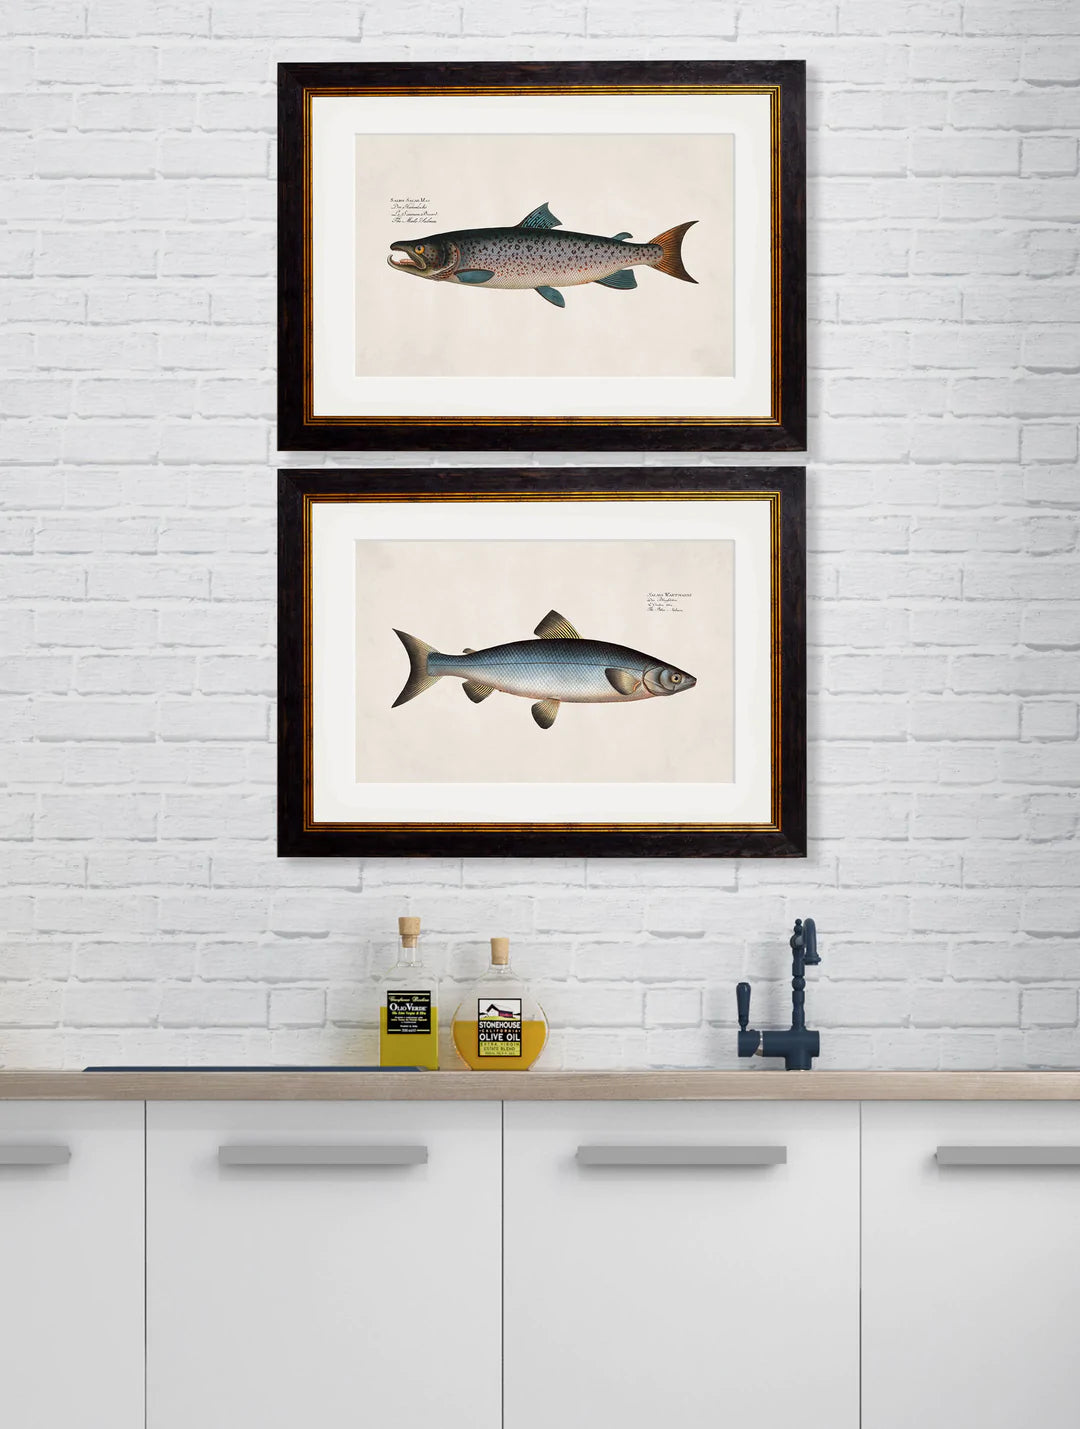 Framed Studies of Salmon